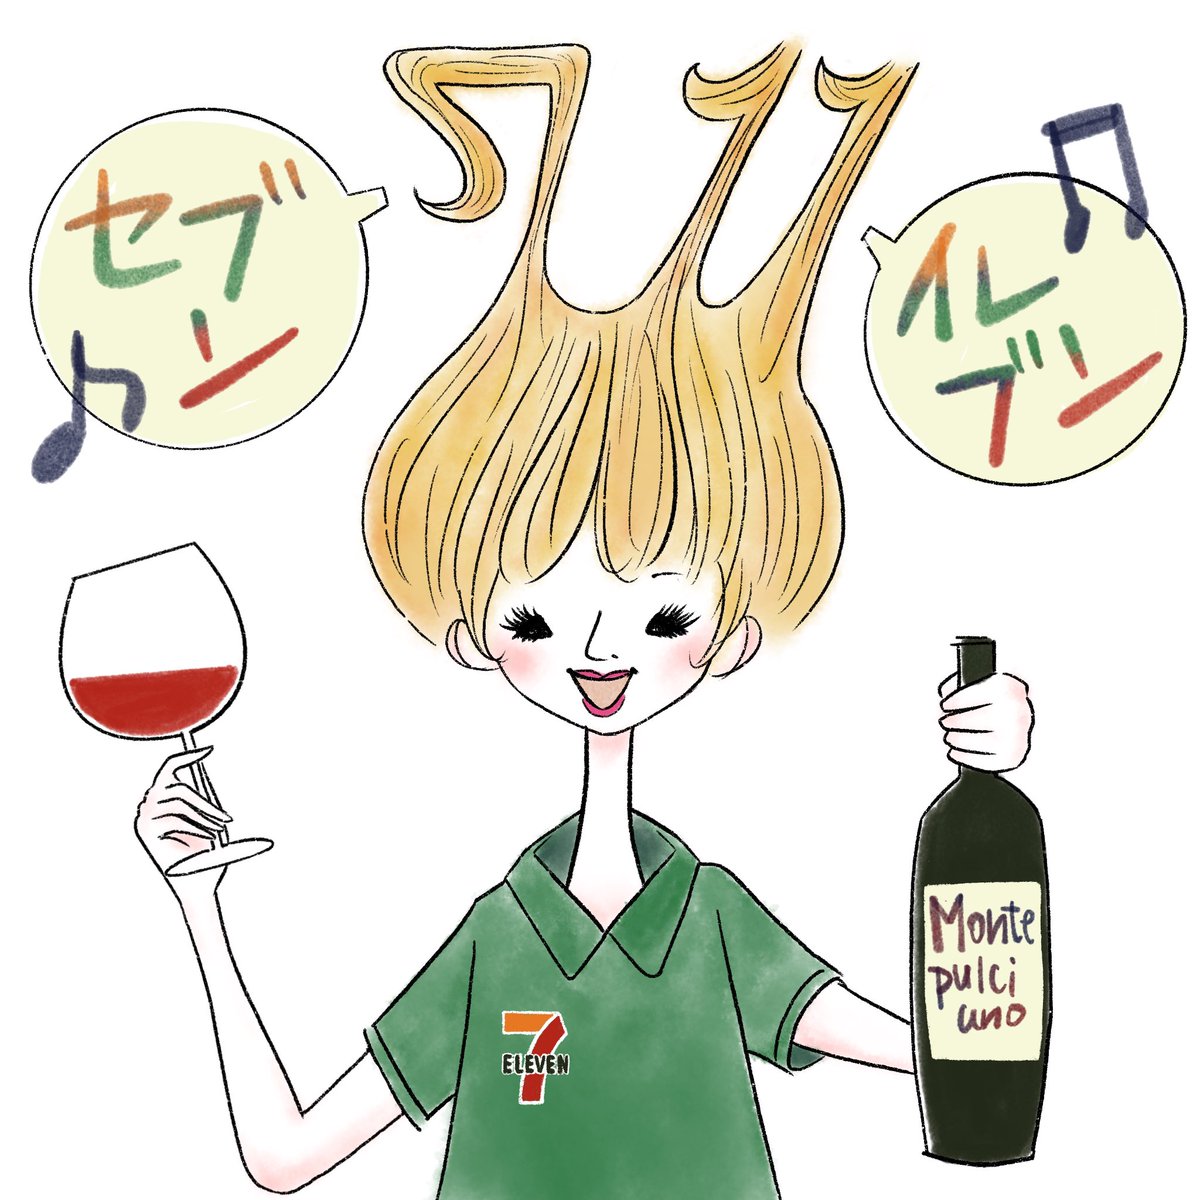 吉田すだち A Twitter 間に合った セブンイレブン日のイラスト描きました W イラスト セブンイレブンの日 コンビニワイン ワインエキスパート イラスト好きさんと繋がりたい T Co 30mhjps4o5